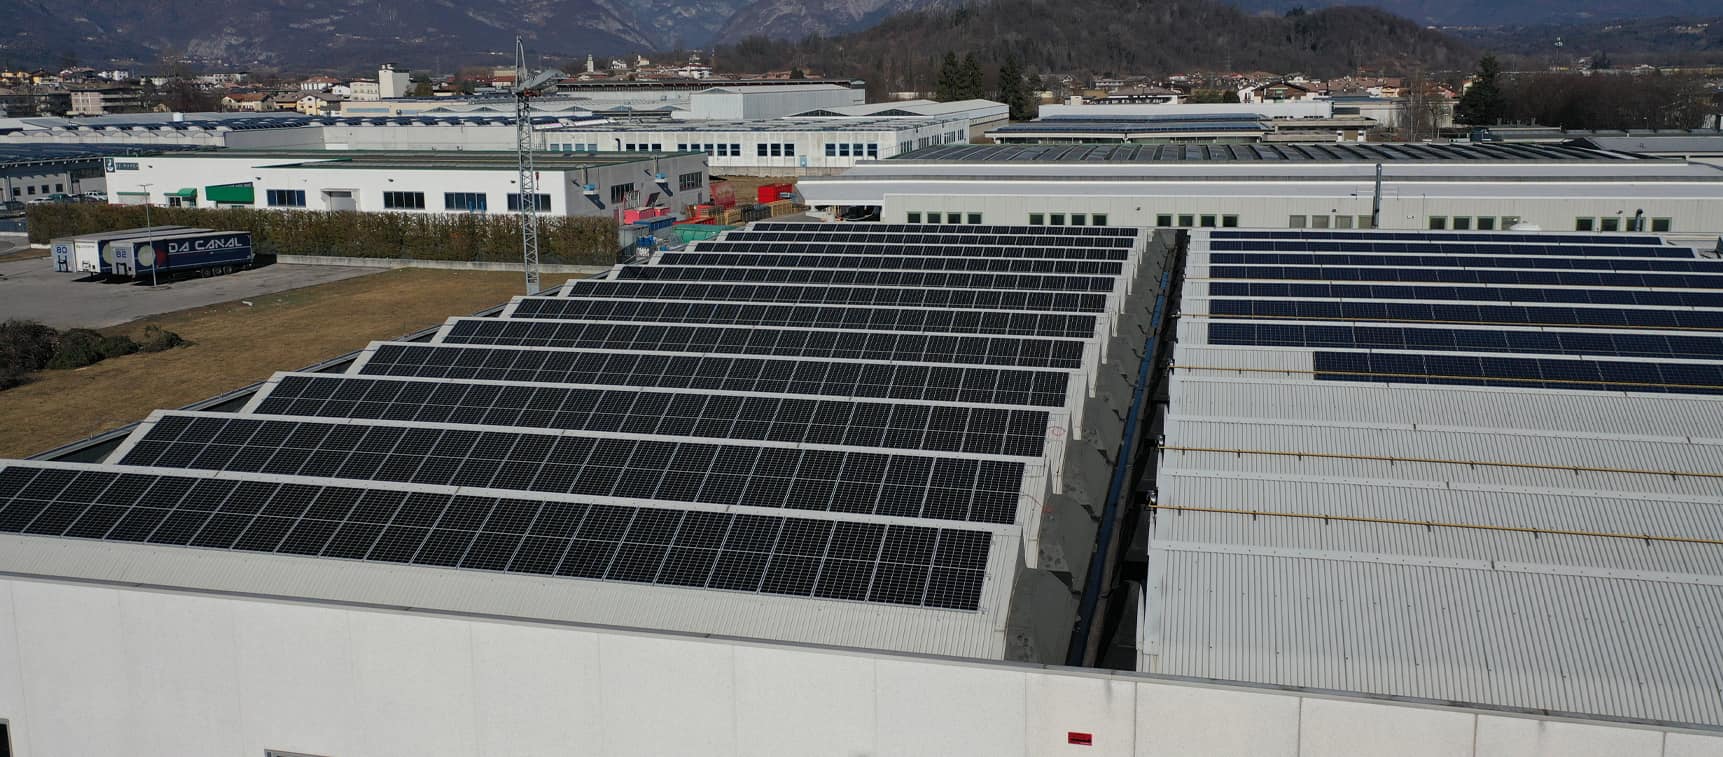 Projektfall einer 120 kW On Grid-Photovoltaikanlage in Italien